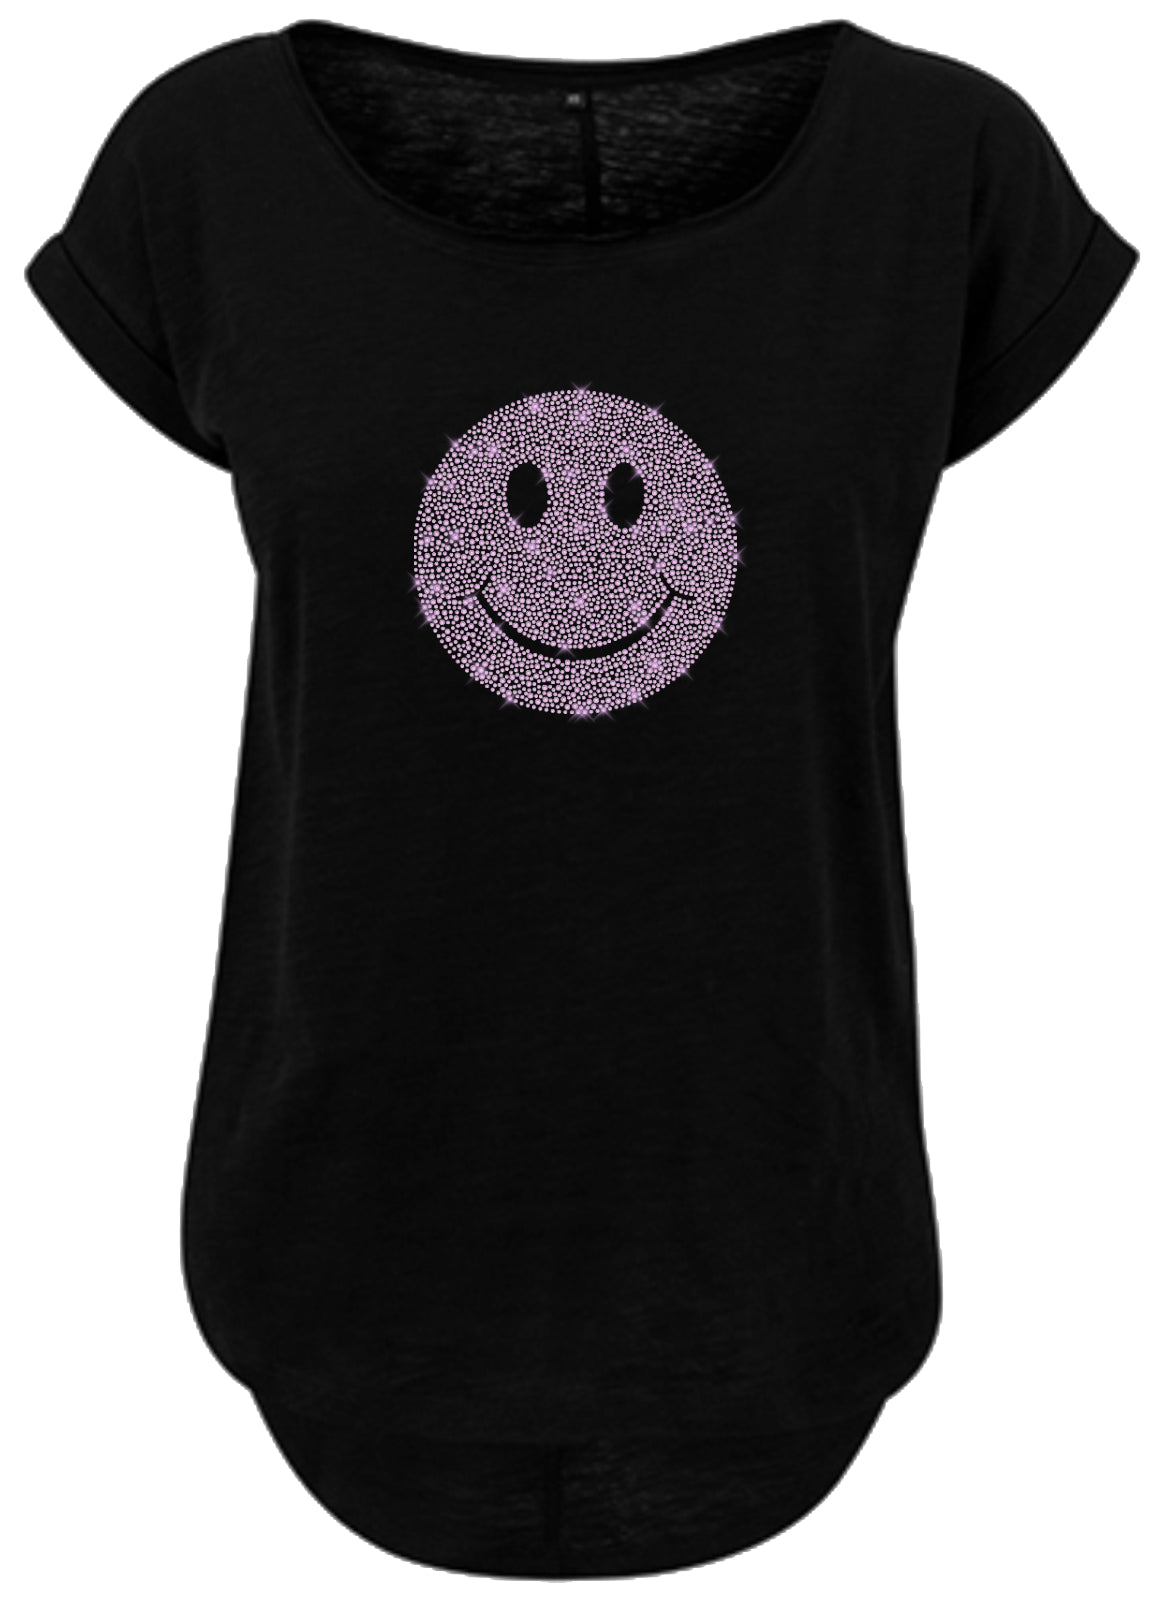 Blingeling®Shirts Damen T-Shirt mit Emoji Smile, Smiley in Rosa / Flieder